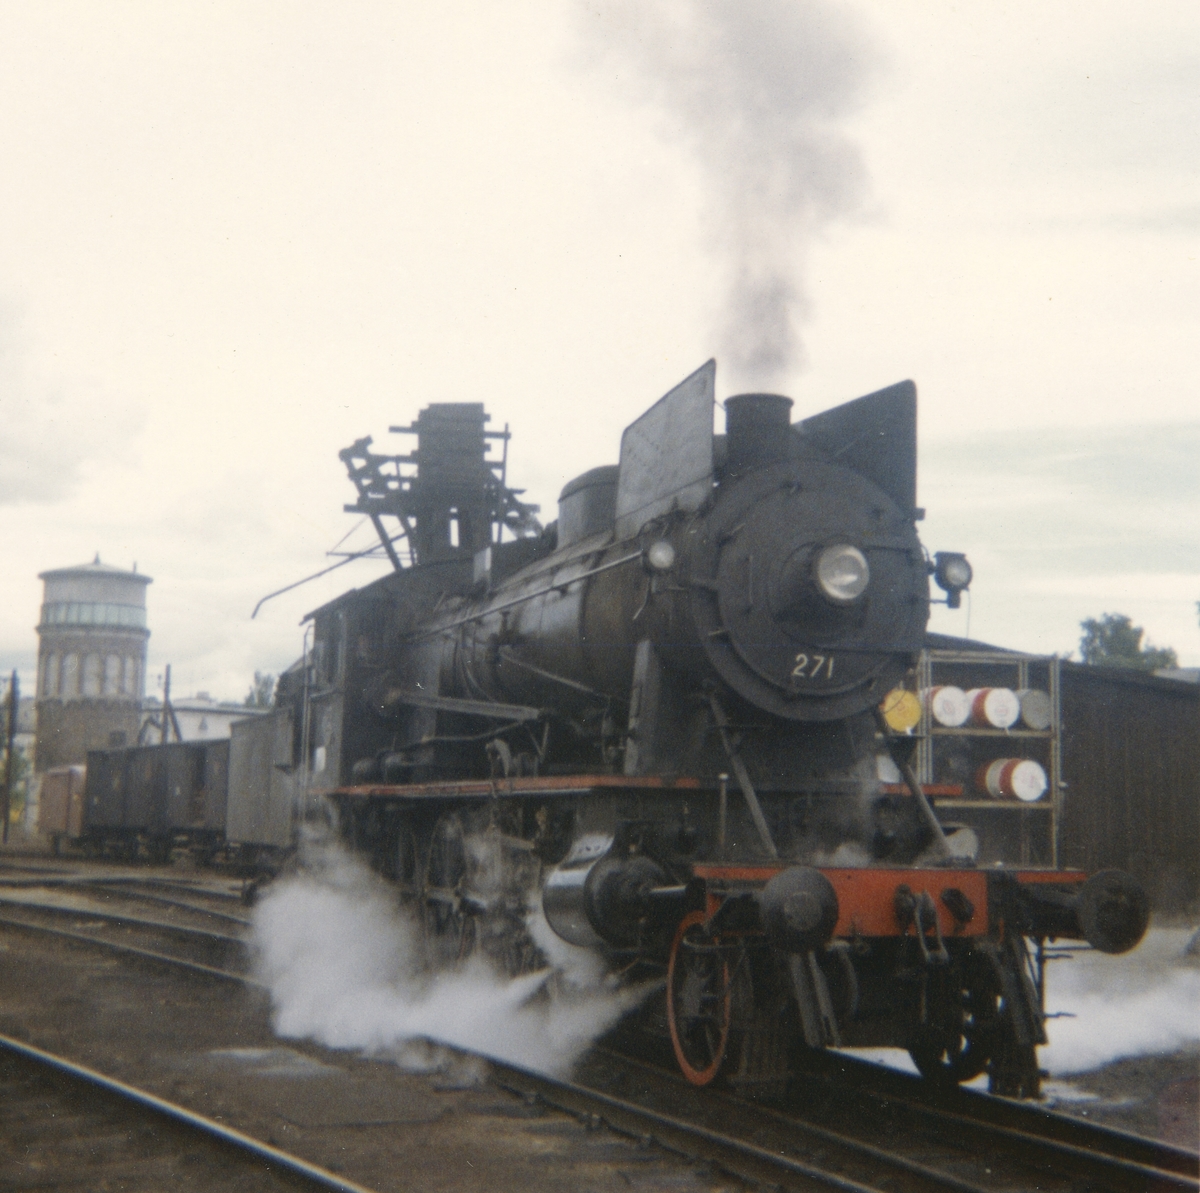 Damplokomotiv type 30a 271 ved lokomotivstallen på Hamar.